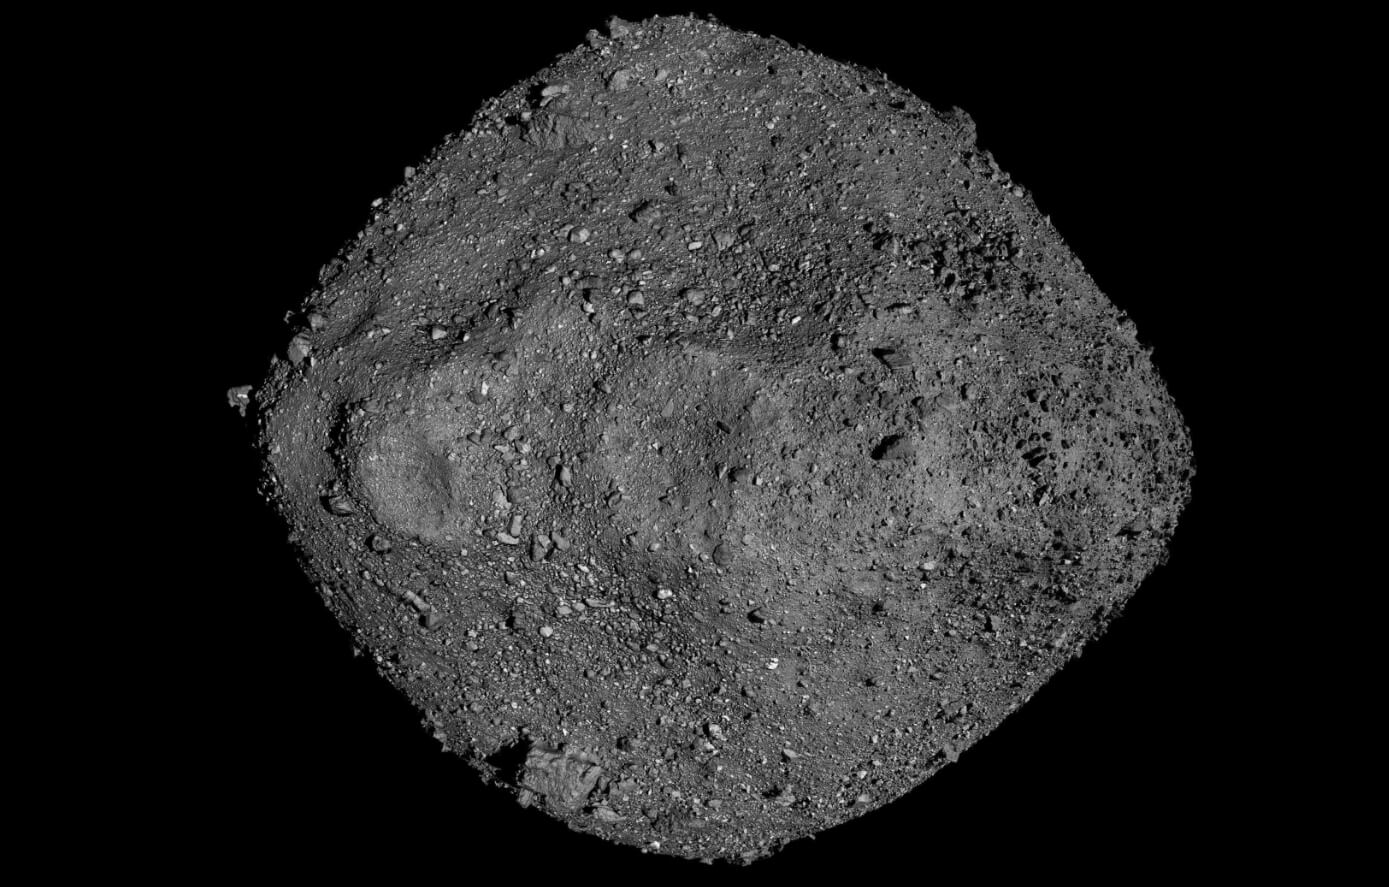 Ученые изучили образцы грунта астероида Бенну — их ждал приятный сюрприз. Космическая станция OSIRIS-REx удивила ученых результатами своей работы. Фото.